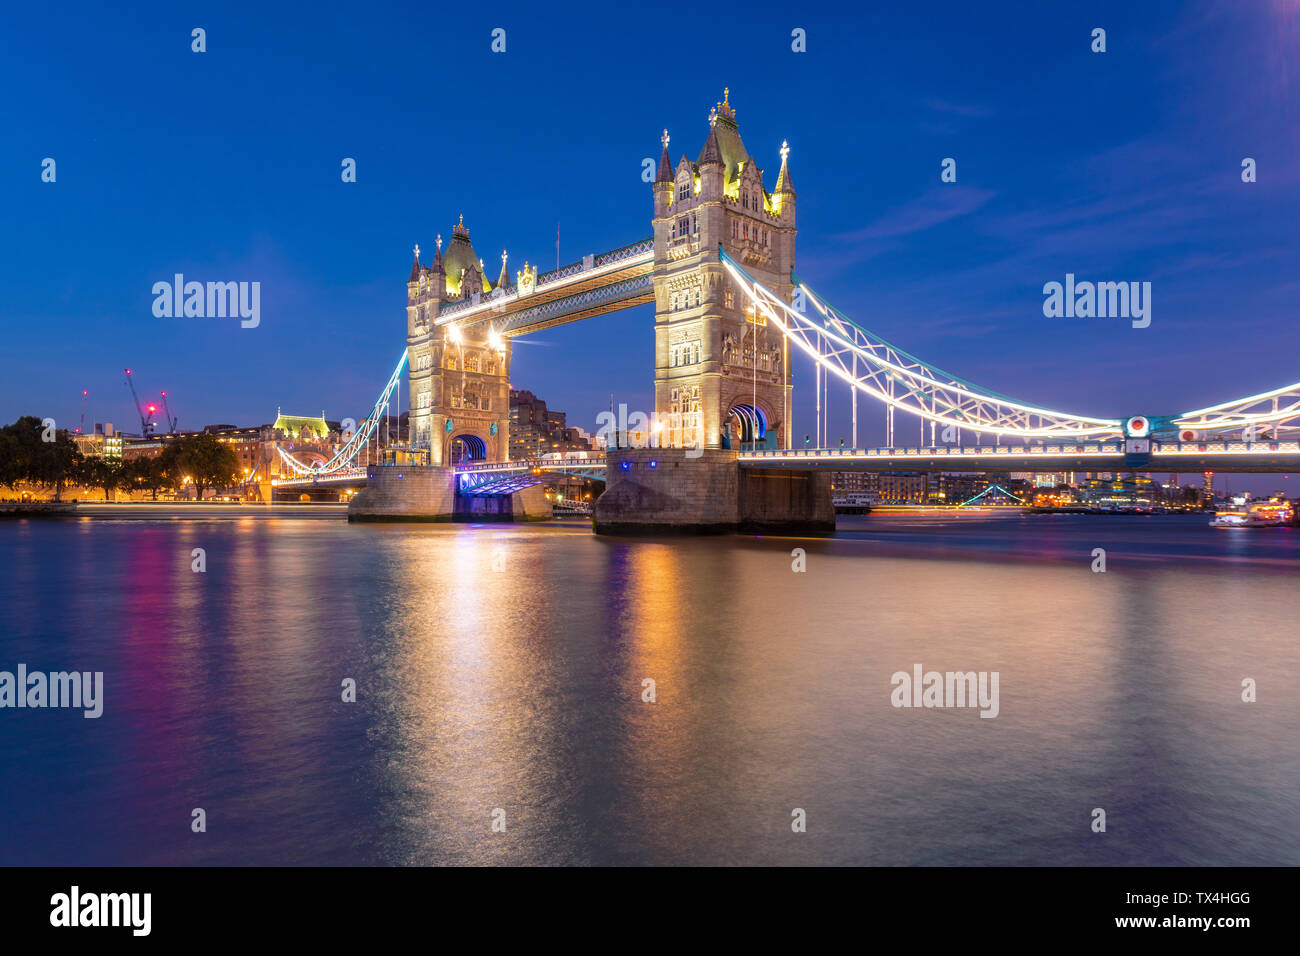 UK, Londra, illuminato il Tower Bridge di notte Foto Stock